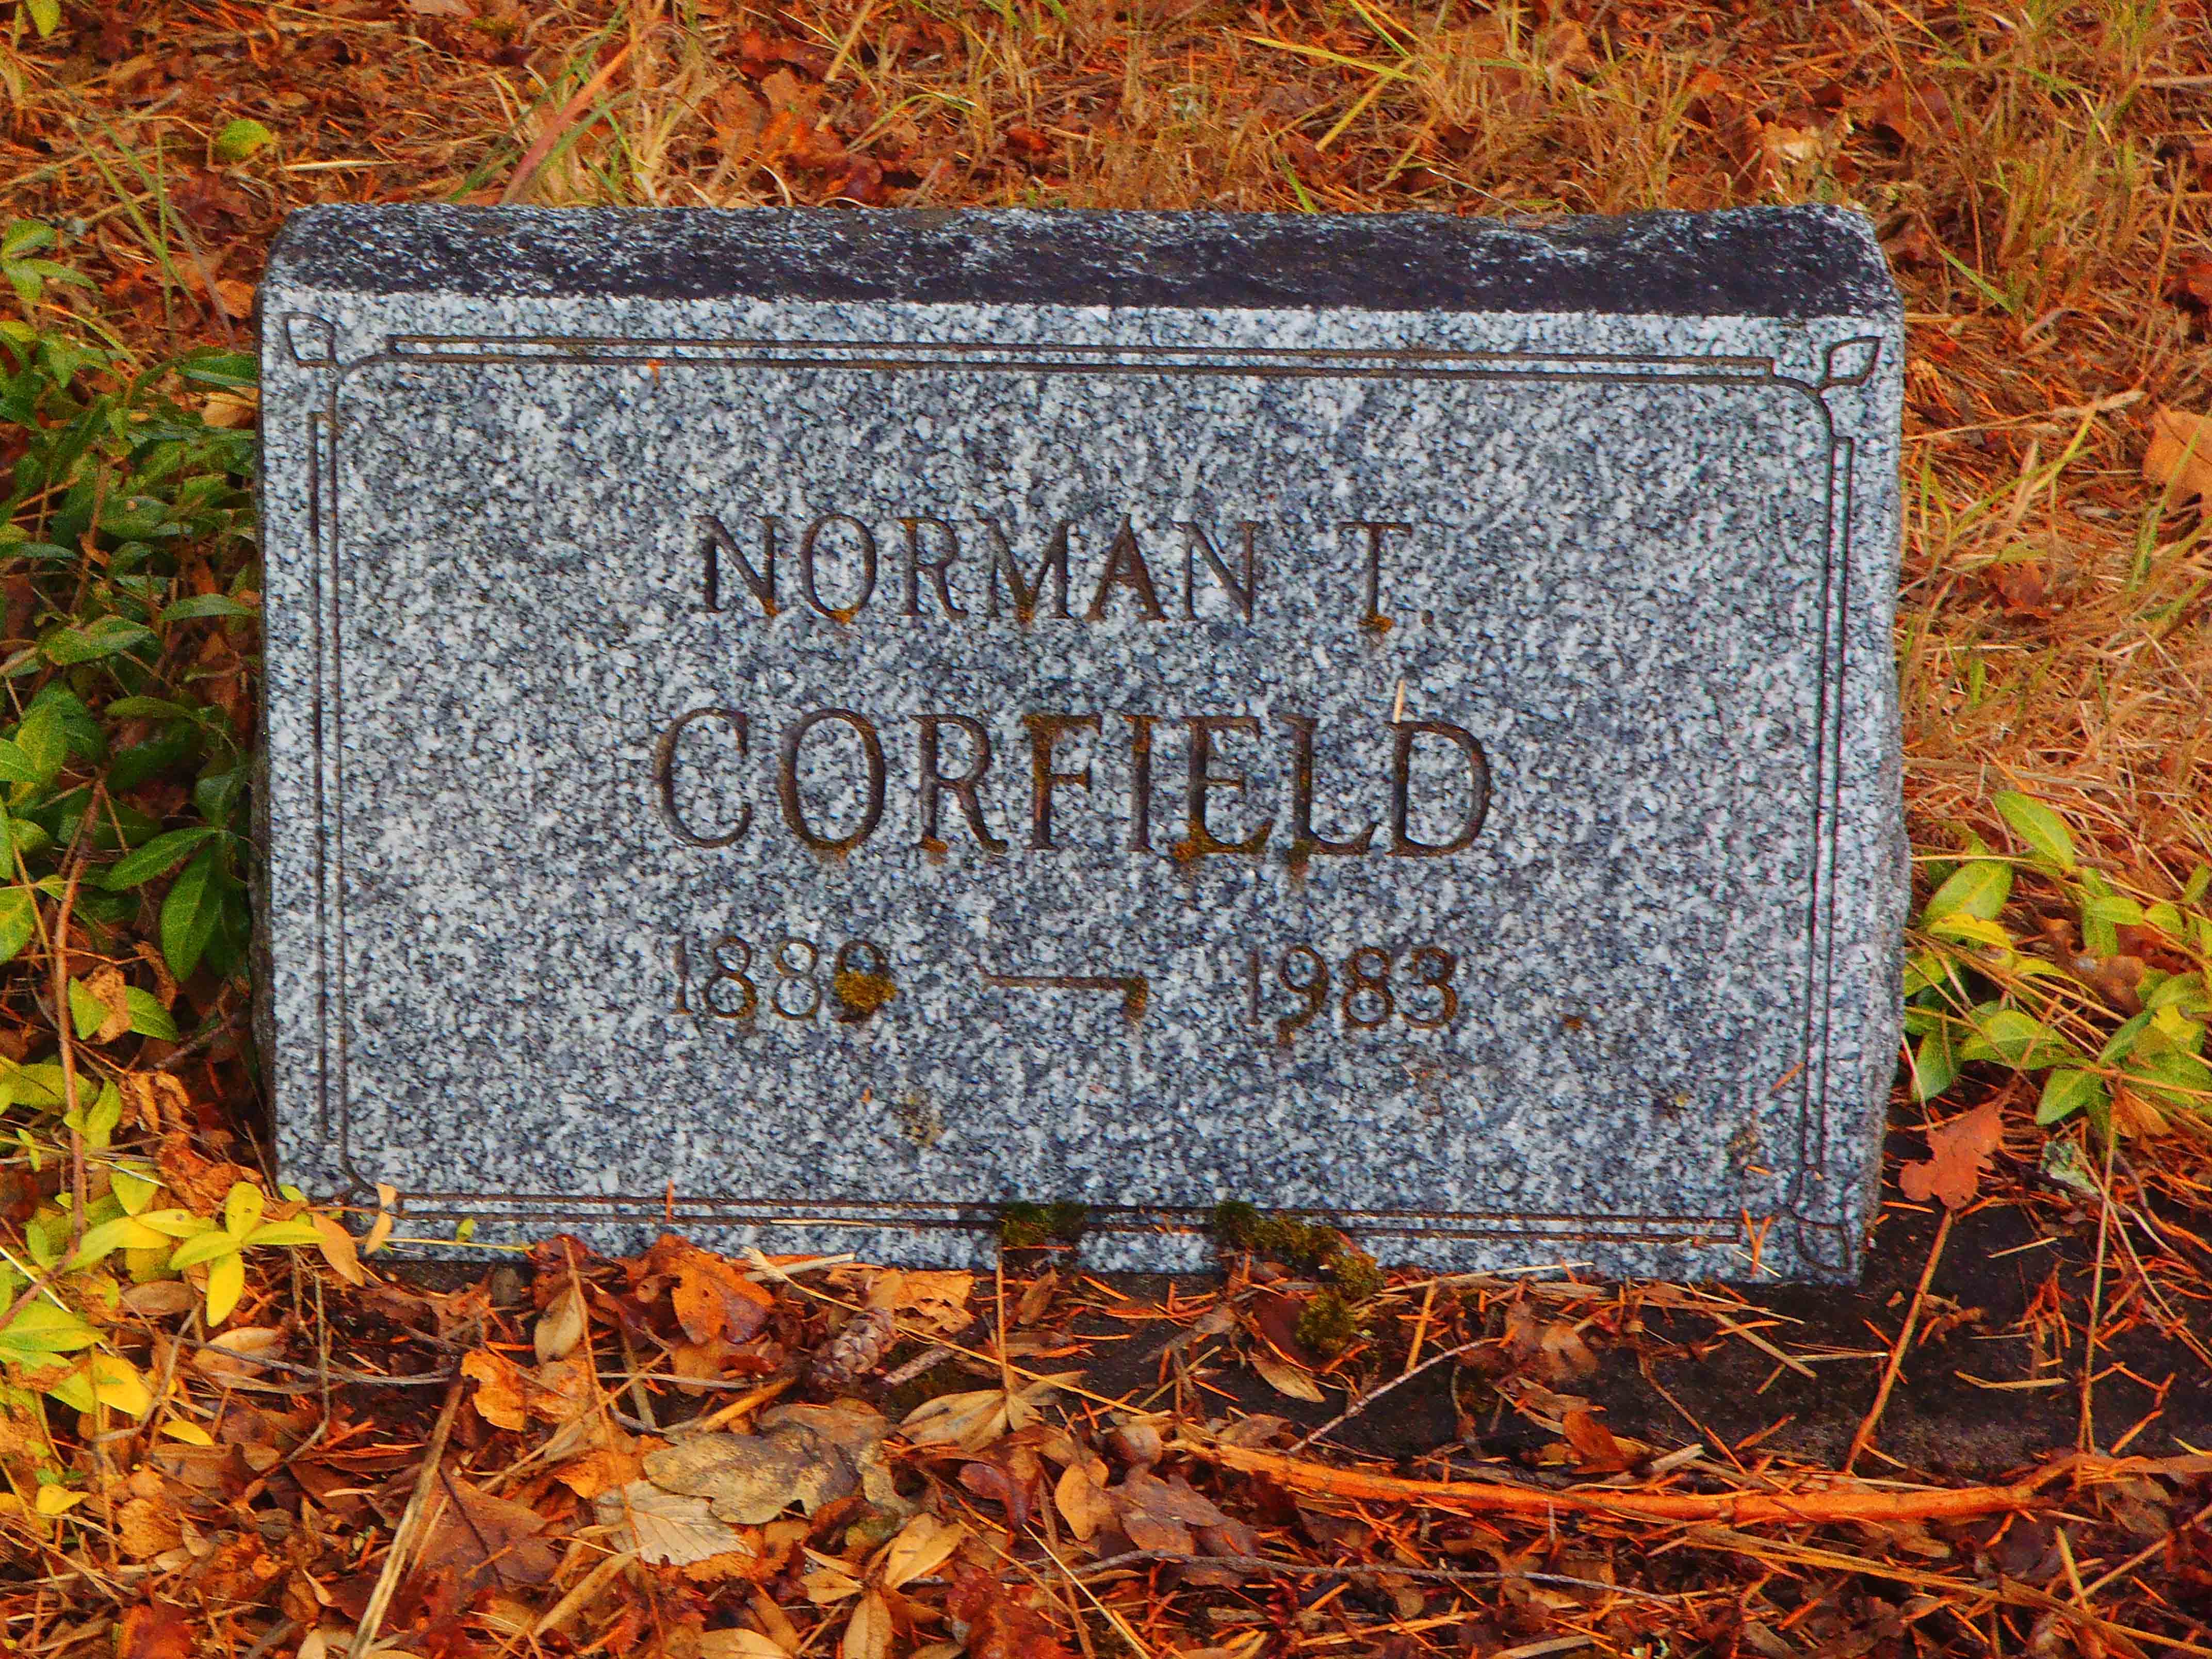 Norman Corfield gravestone